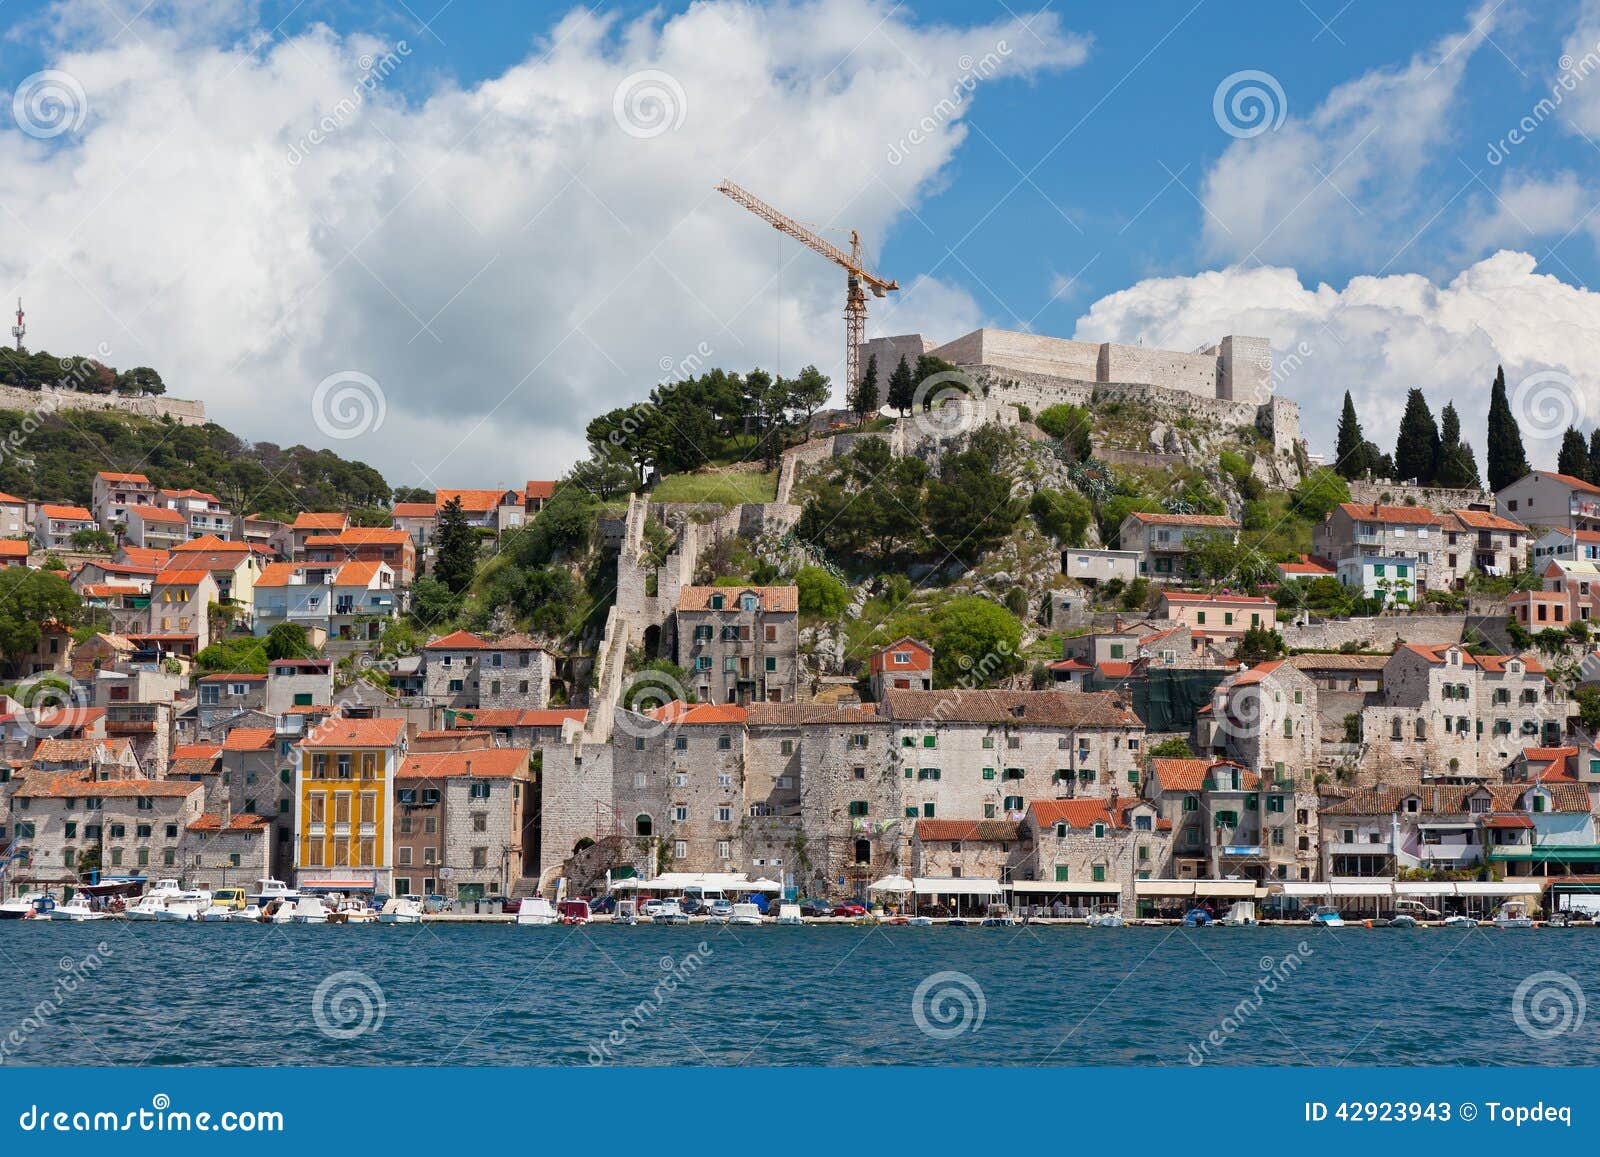 Sibenik, Kroatien-Ansicht vom Meer. Sibenik ist eine historische Stadt und ein Hafen auf der adriatischen Küste in Kroatien